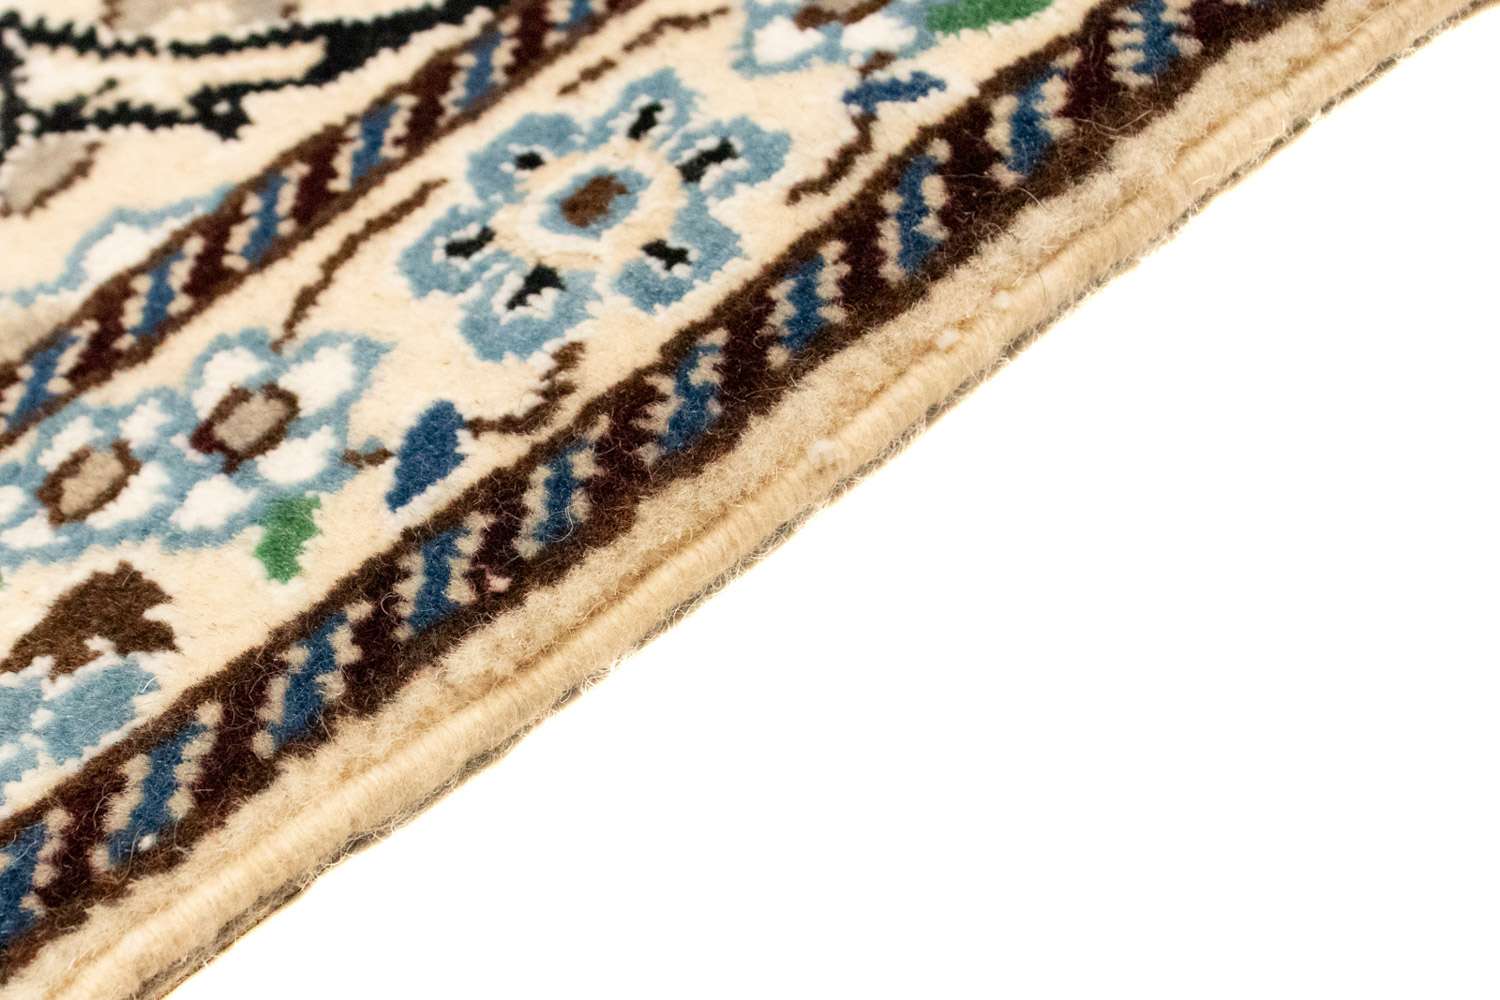 Perzisch tapijt - Nain - Koninklijk - 132 x 87 cm - beige